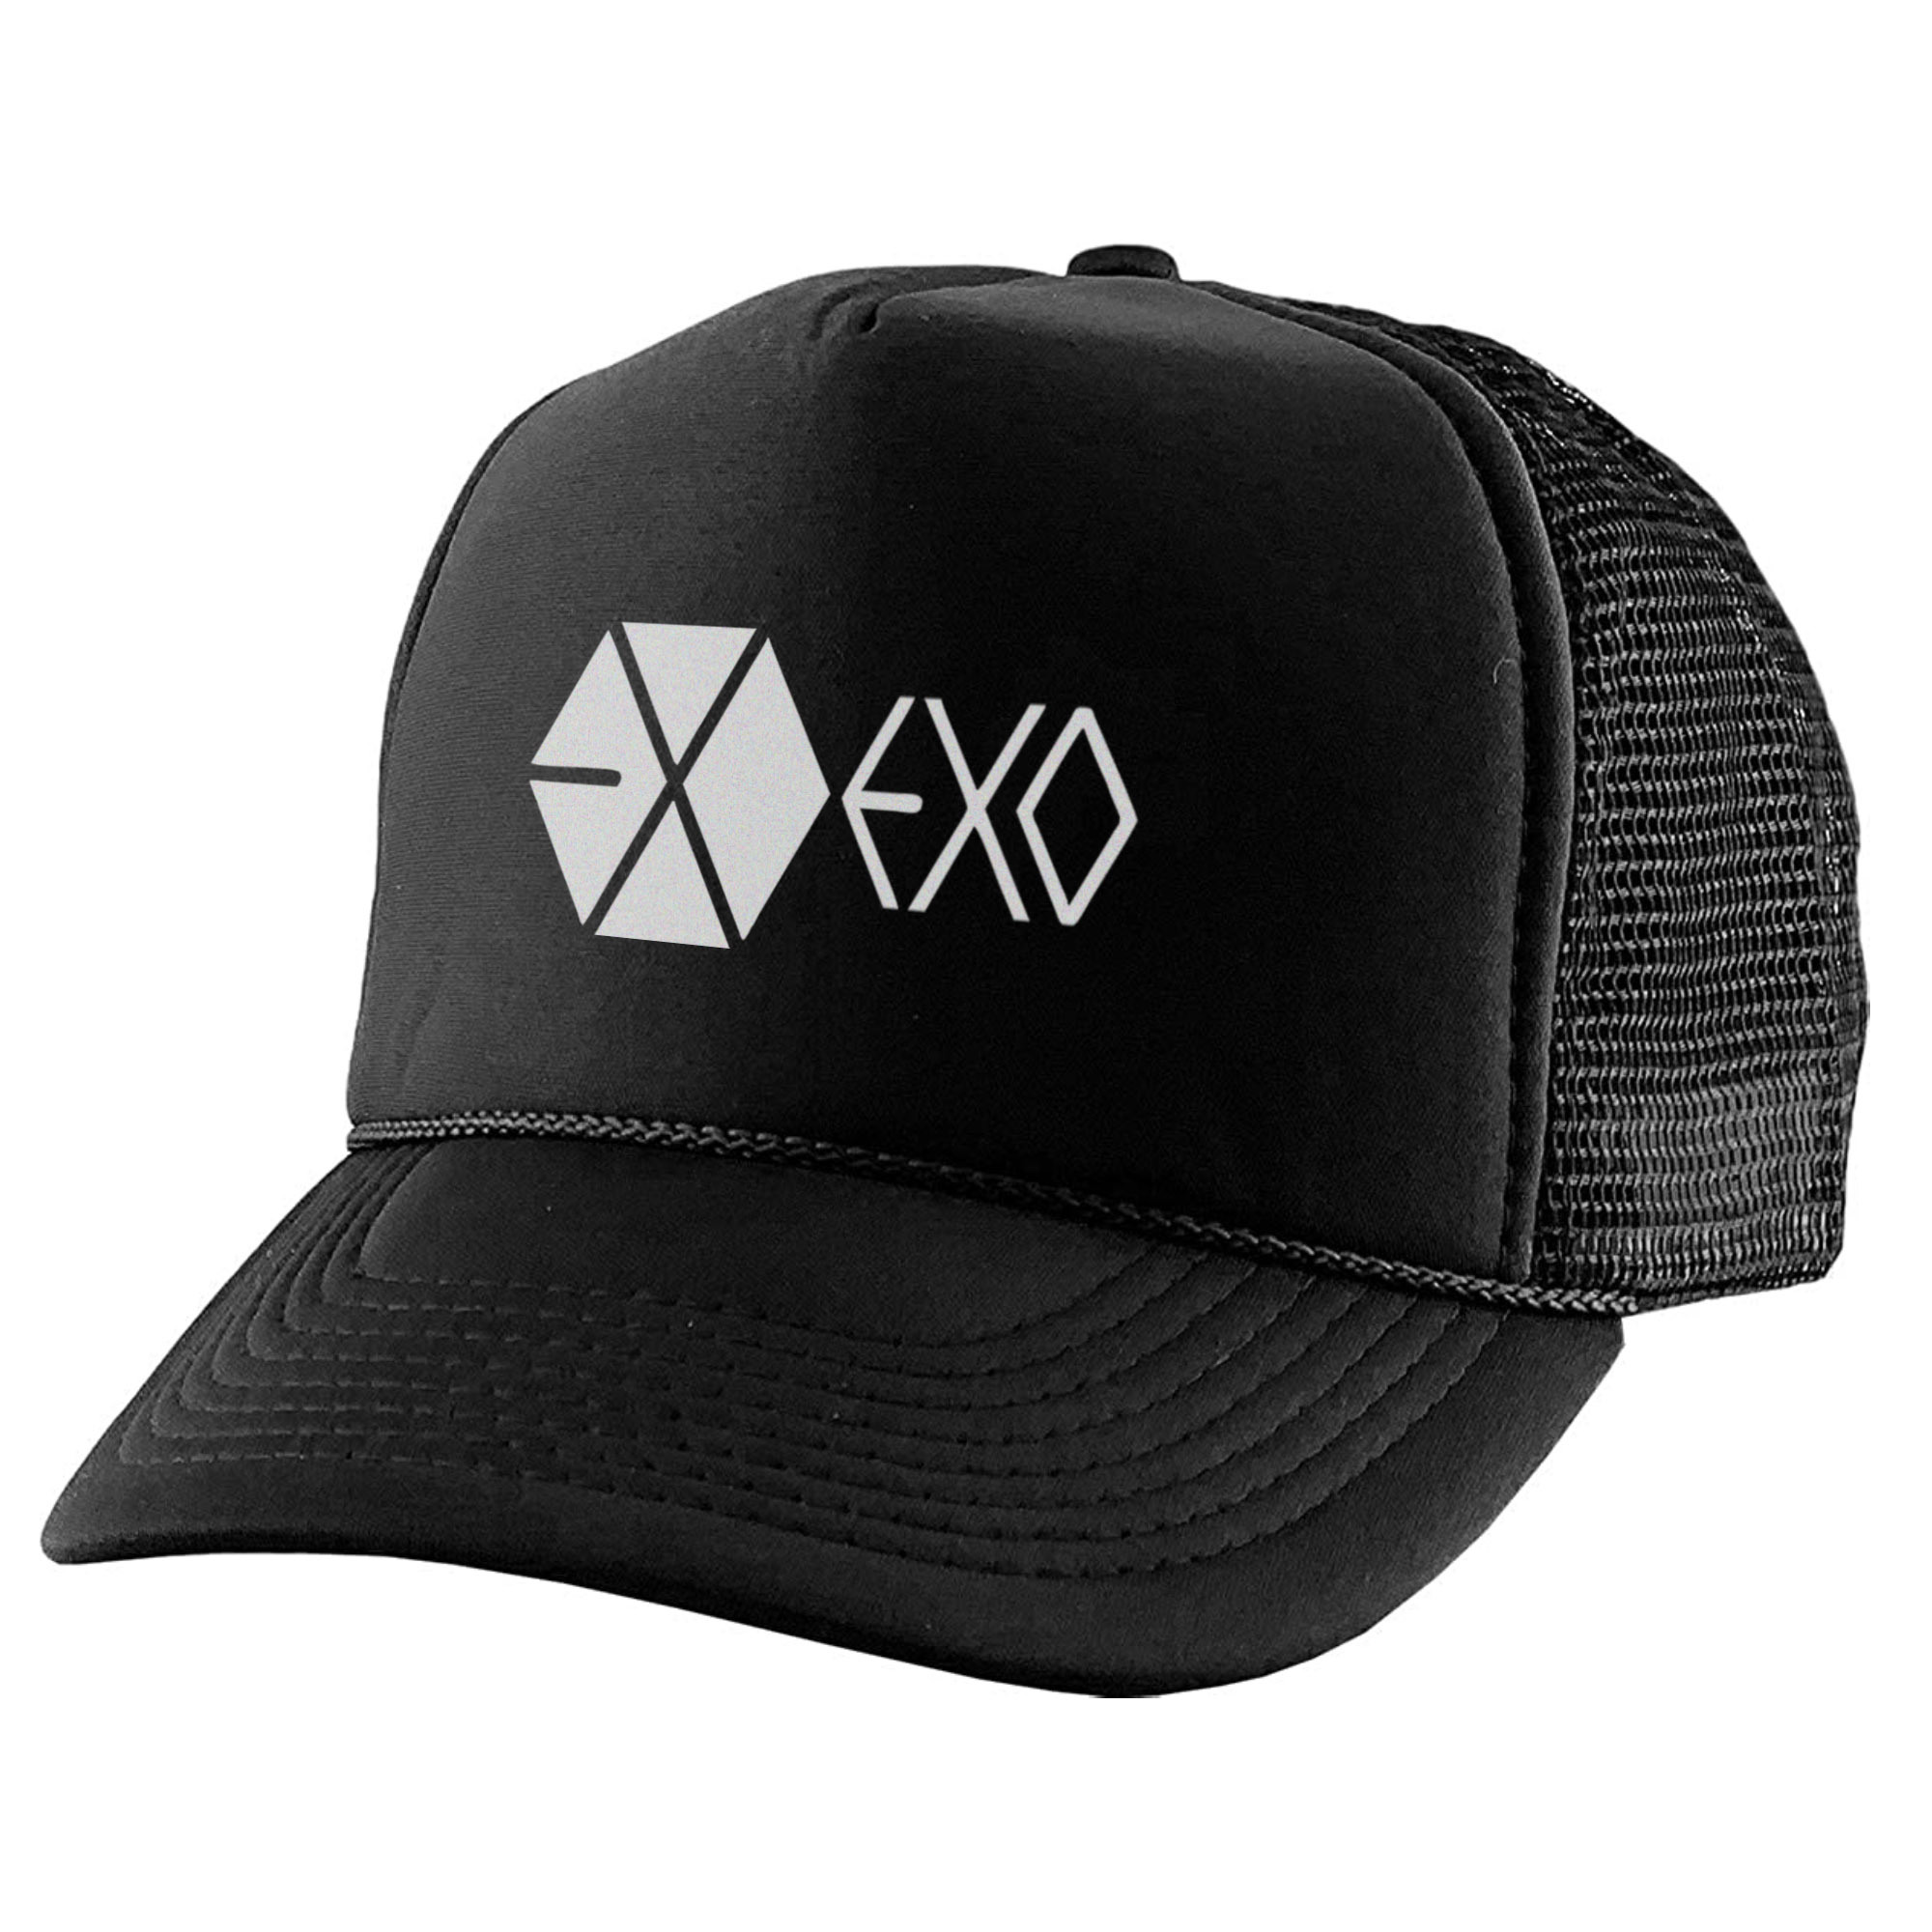 نکته خرید - قیمت روز کلاه کپ مدل گروه موسیقی EXO کد KPP-06 خرید